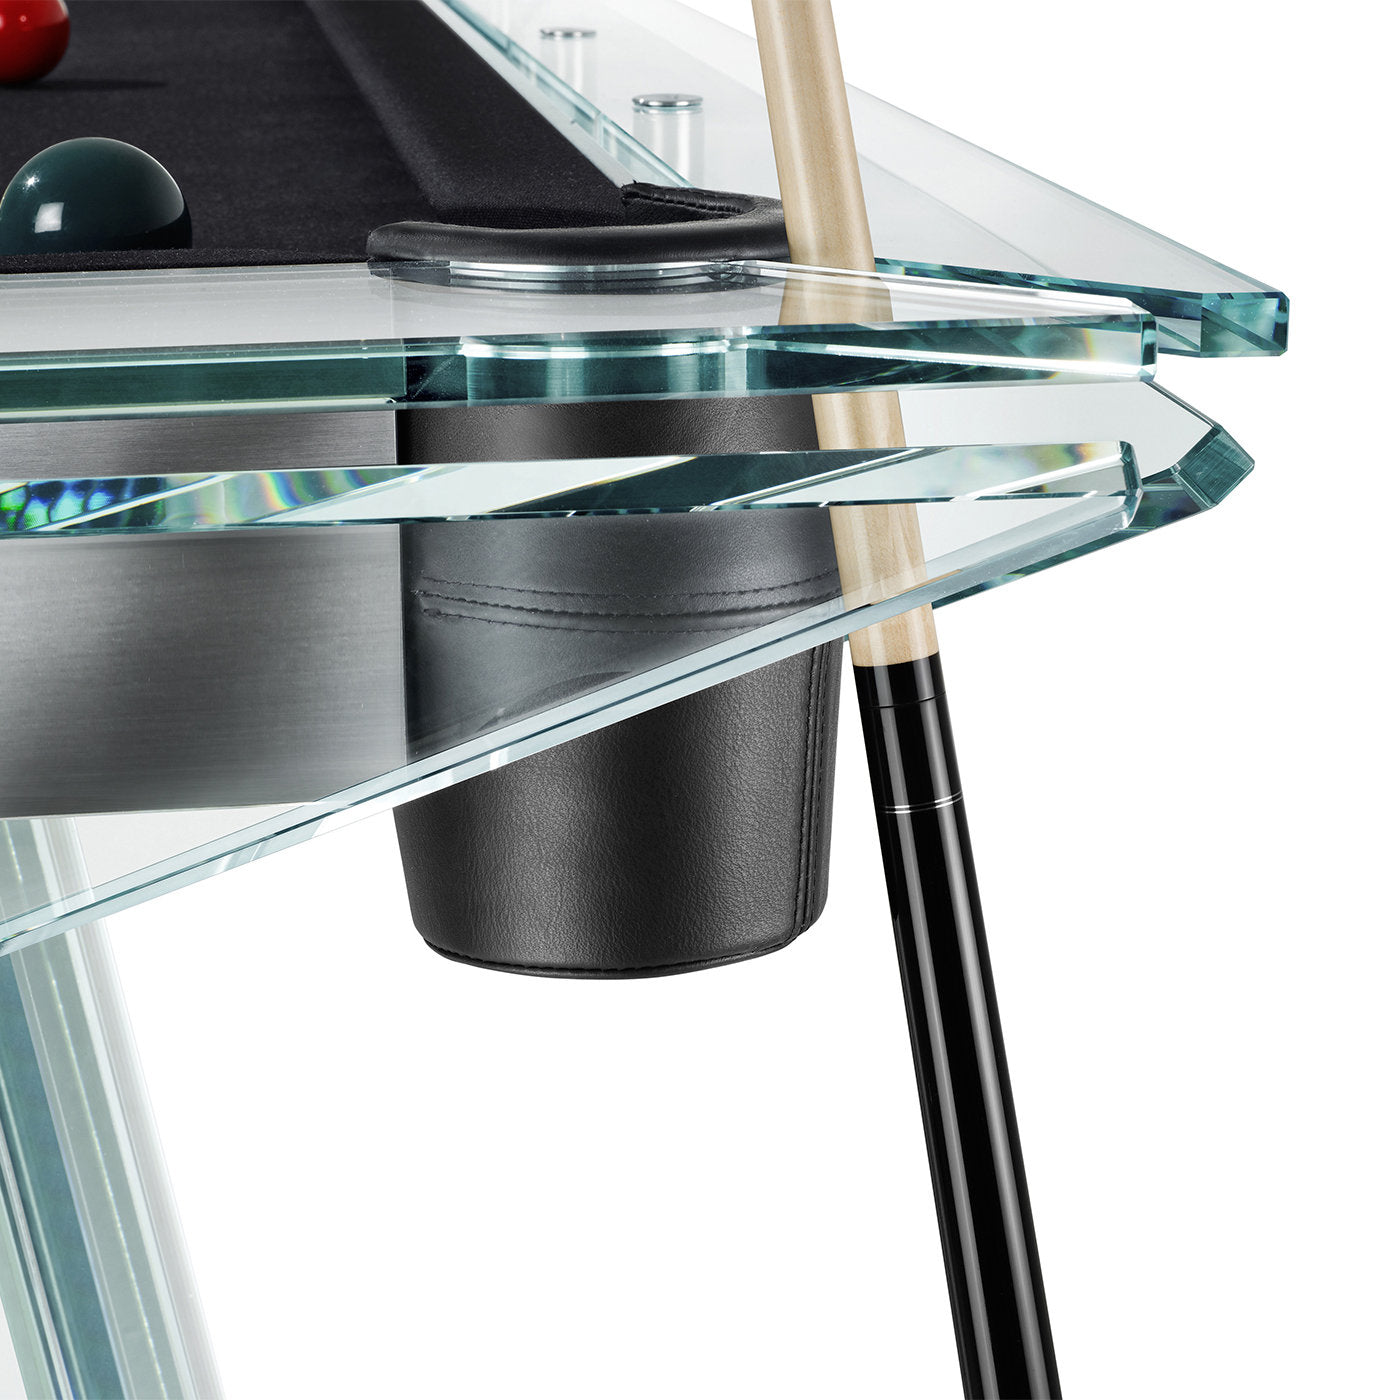 Filotto Billiard Table - Alternative view 3